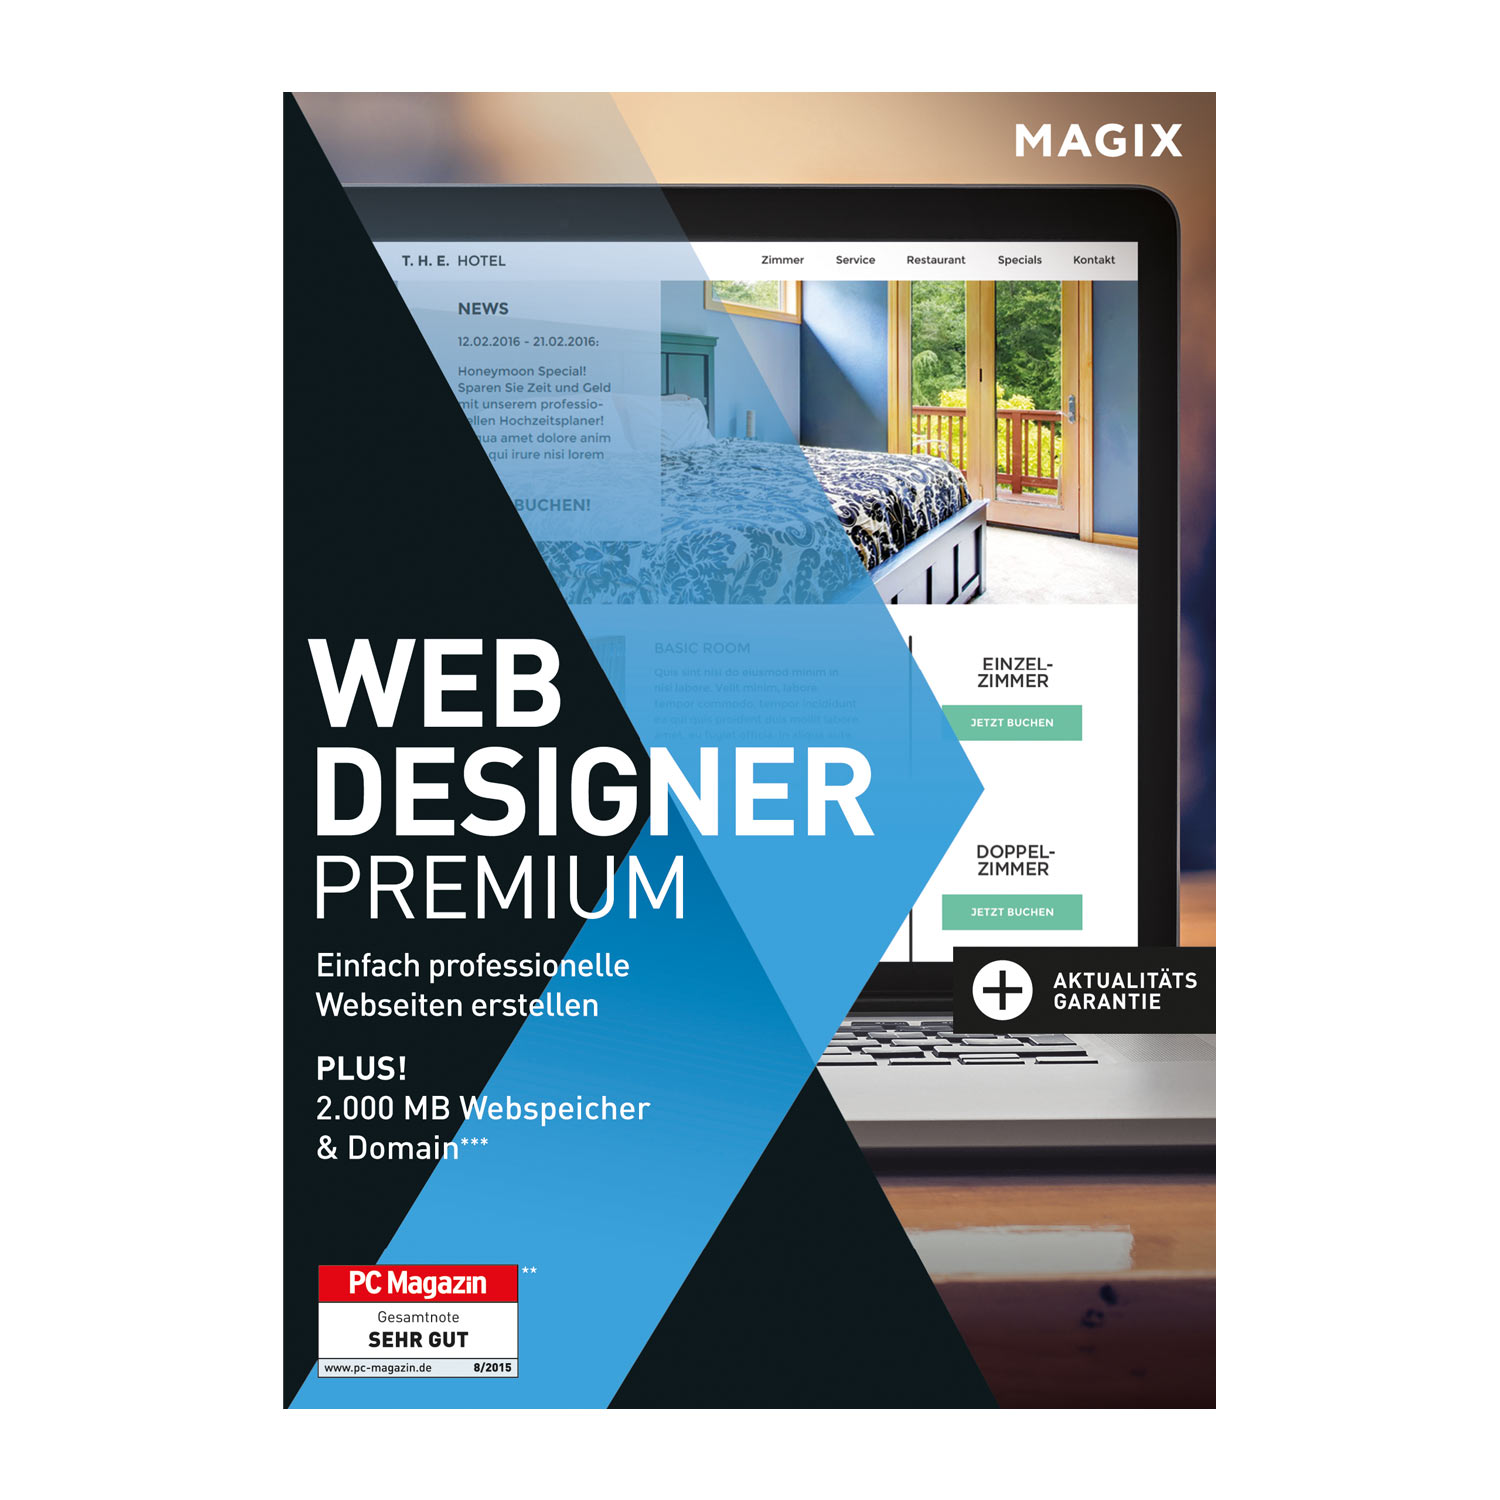 Magix Web Designer Premium Professionelle Websites selbst erstellen